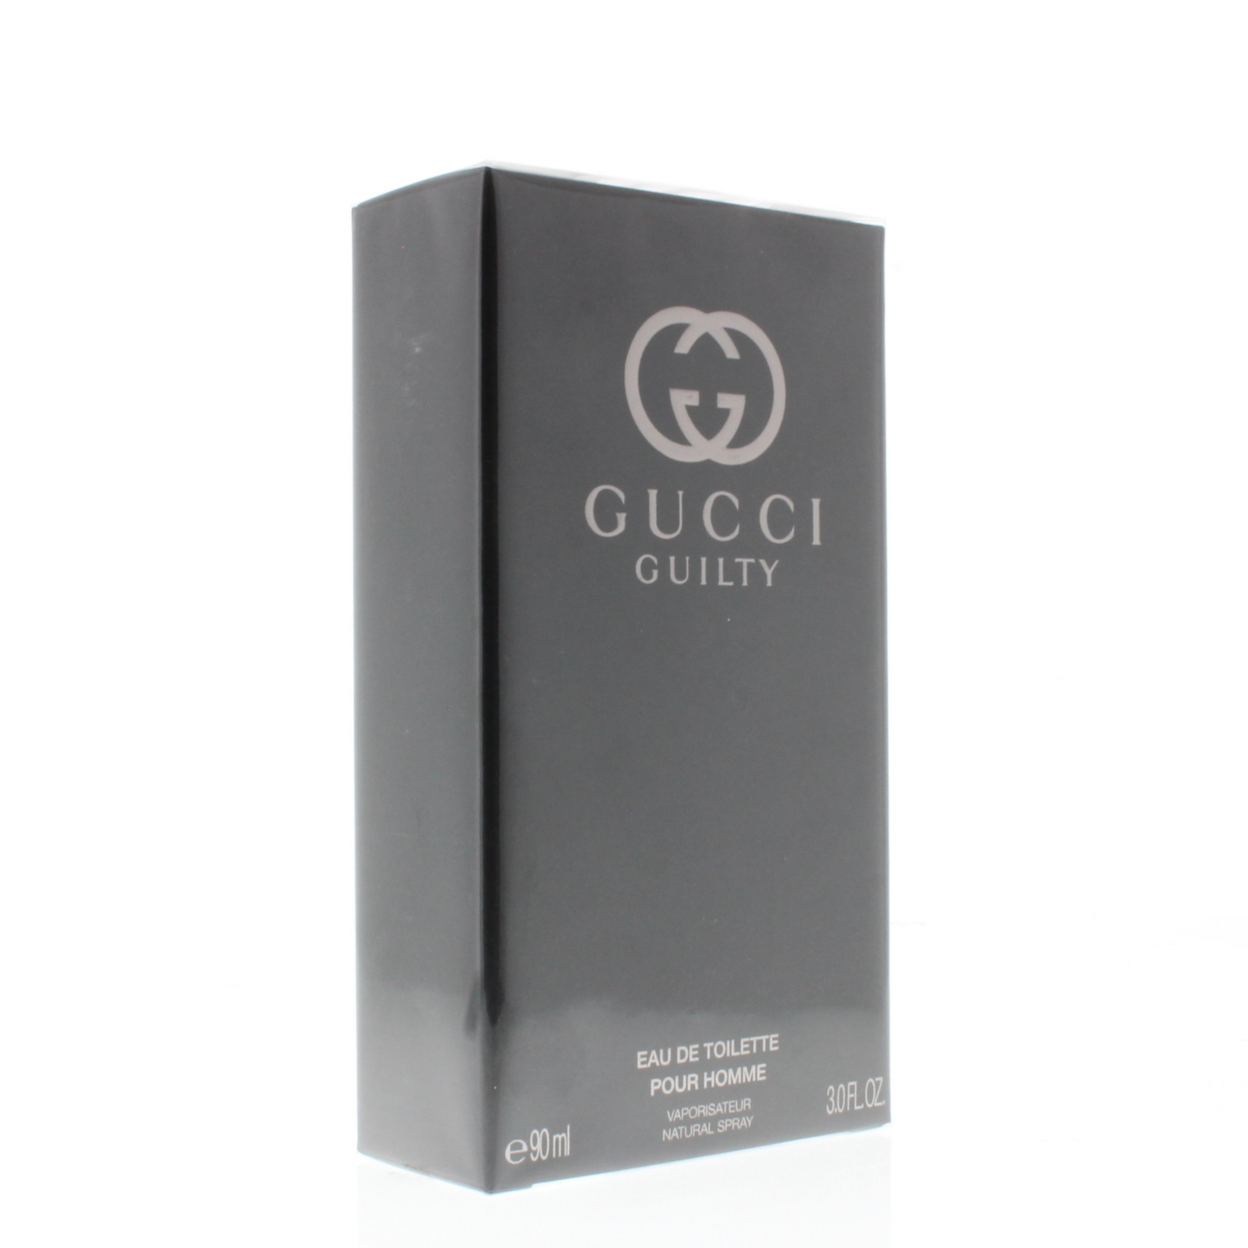 Gucci Guilty Pour Homme Eau De Toilette Spray, Cologne for Men, 3 oz - image 2 of 3